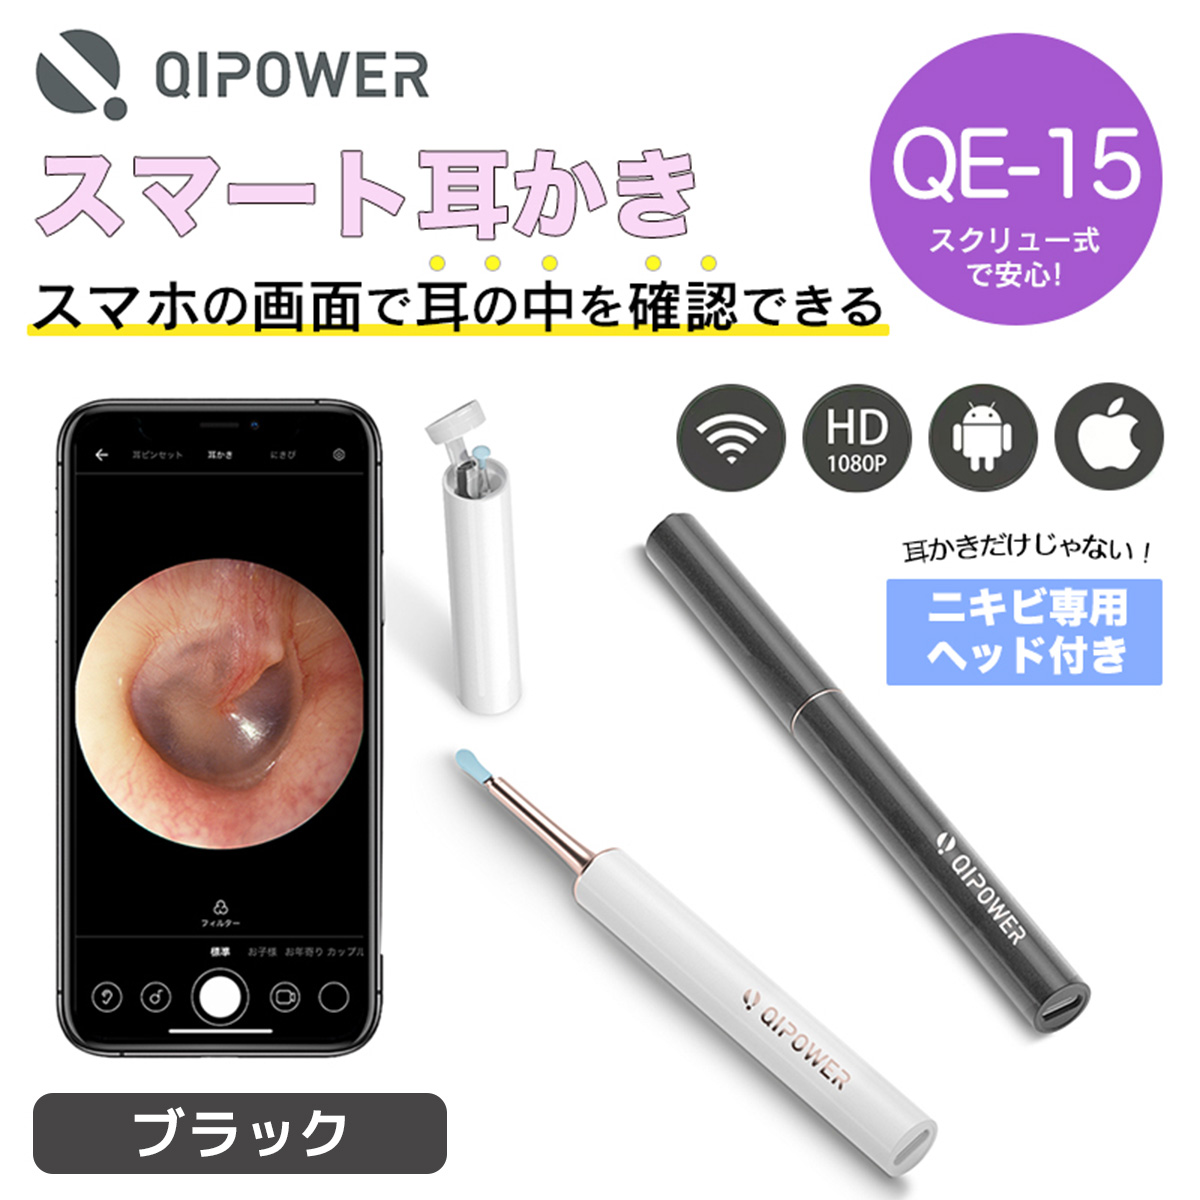 【在庫品/即納】QiPower スマート耳かき QE-15 ブラック